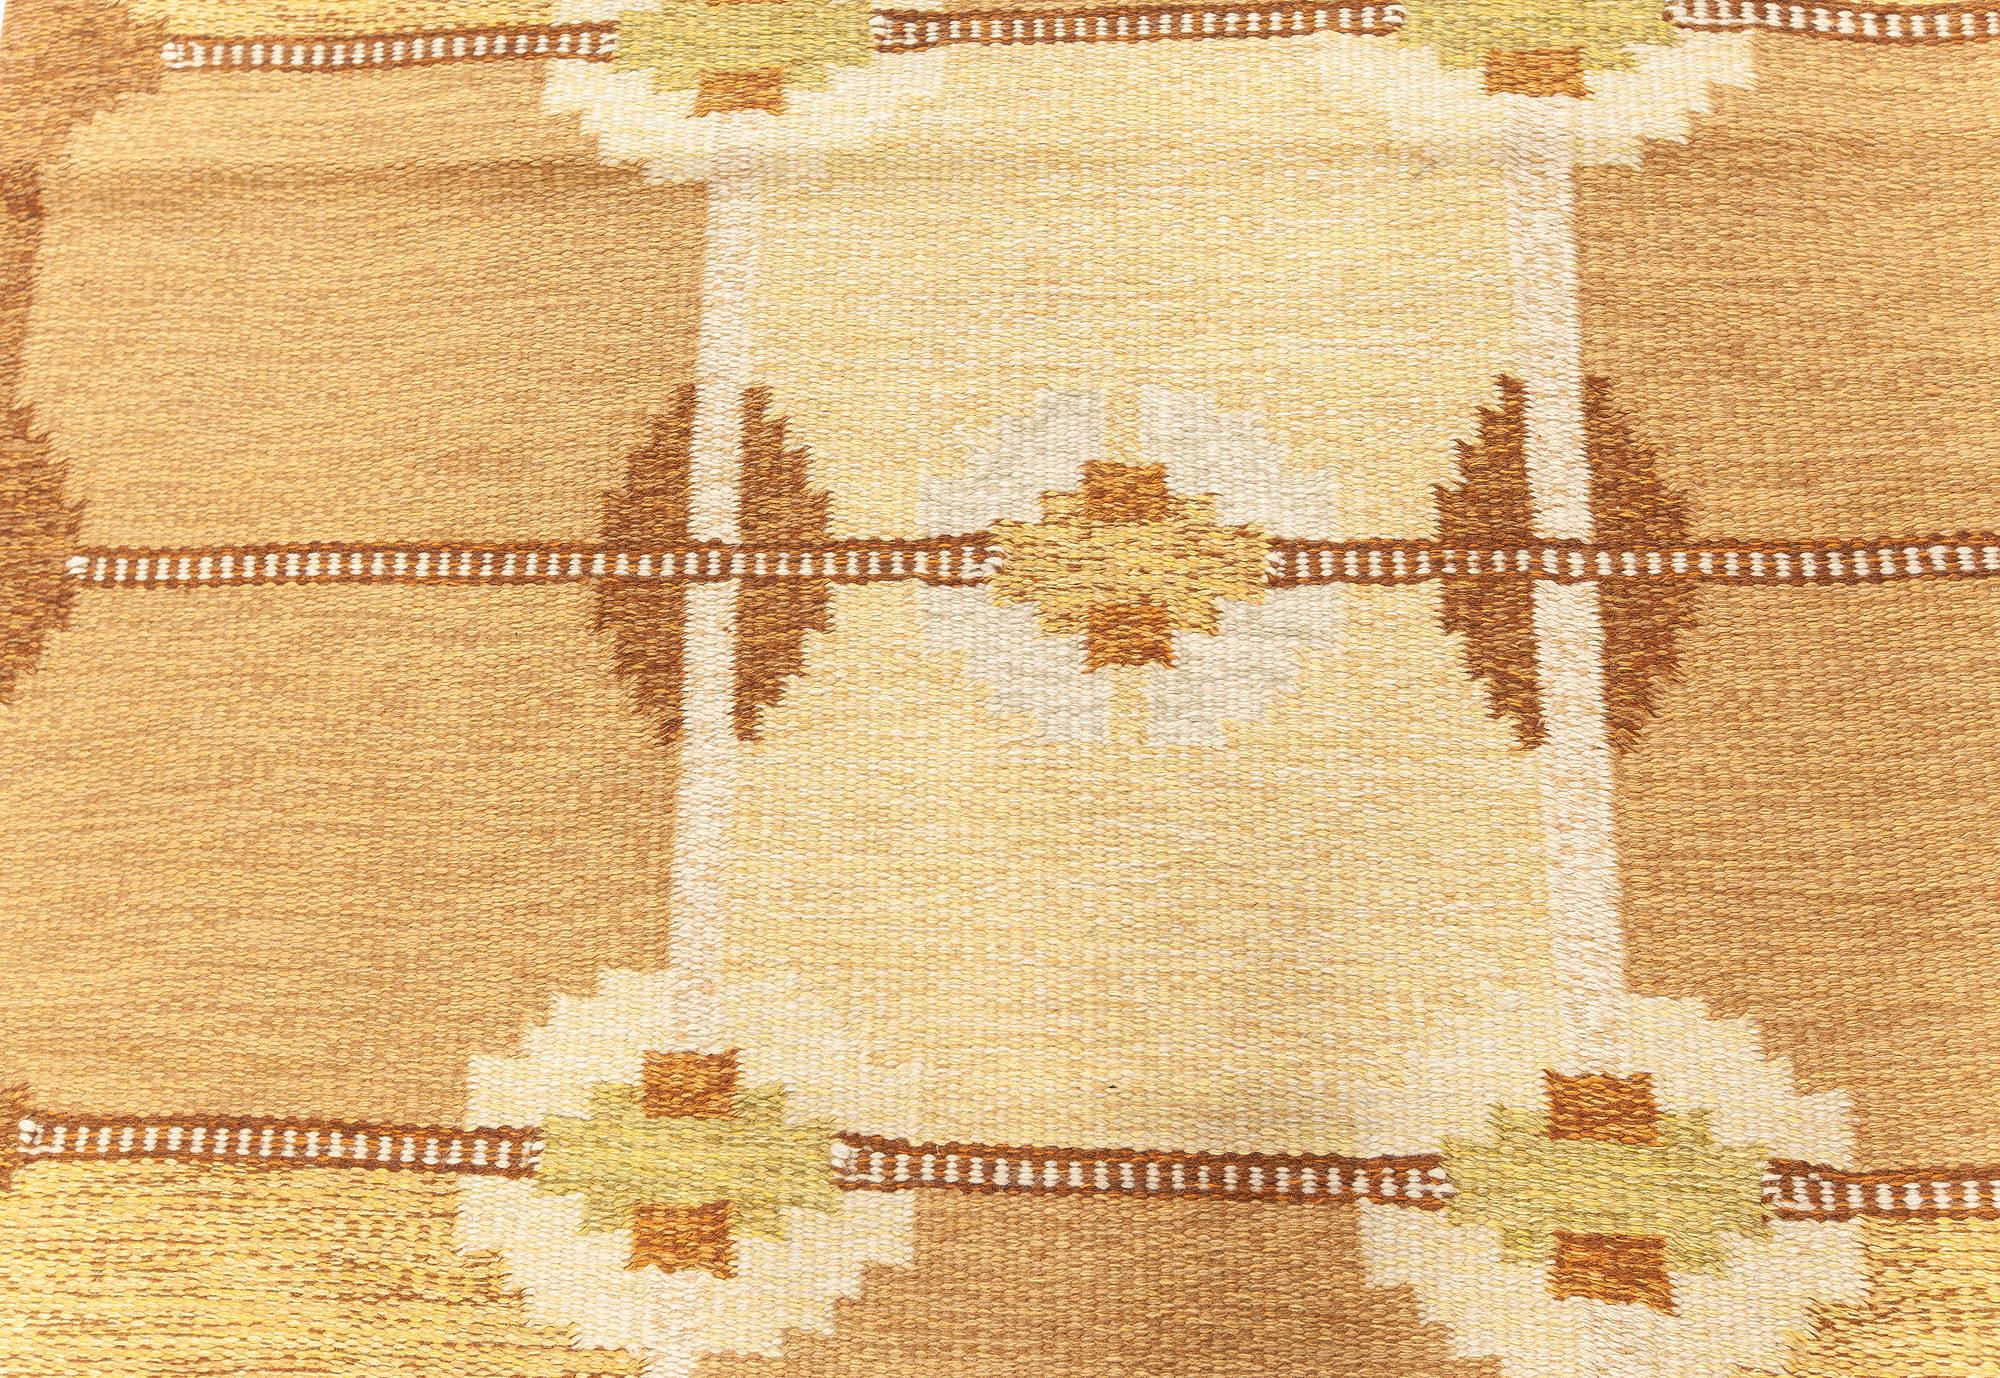 Tapis géométrique suédois vintage en laine beige, marron, or et vert par Ingegerd Silow
Taille : 4'6